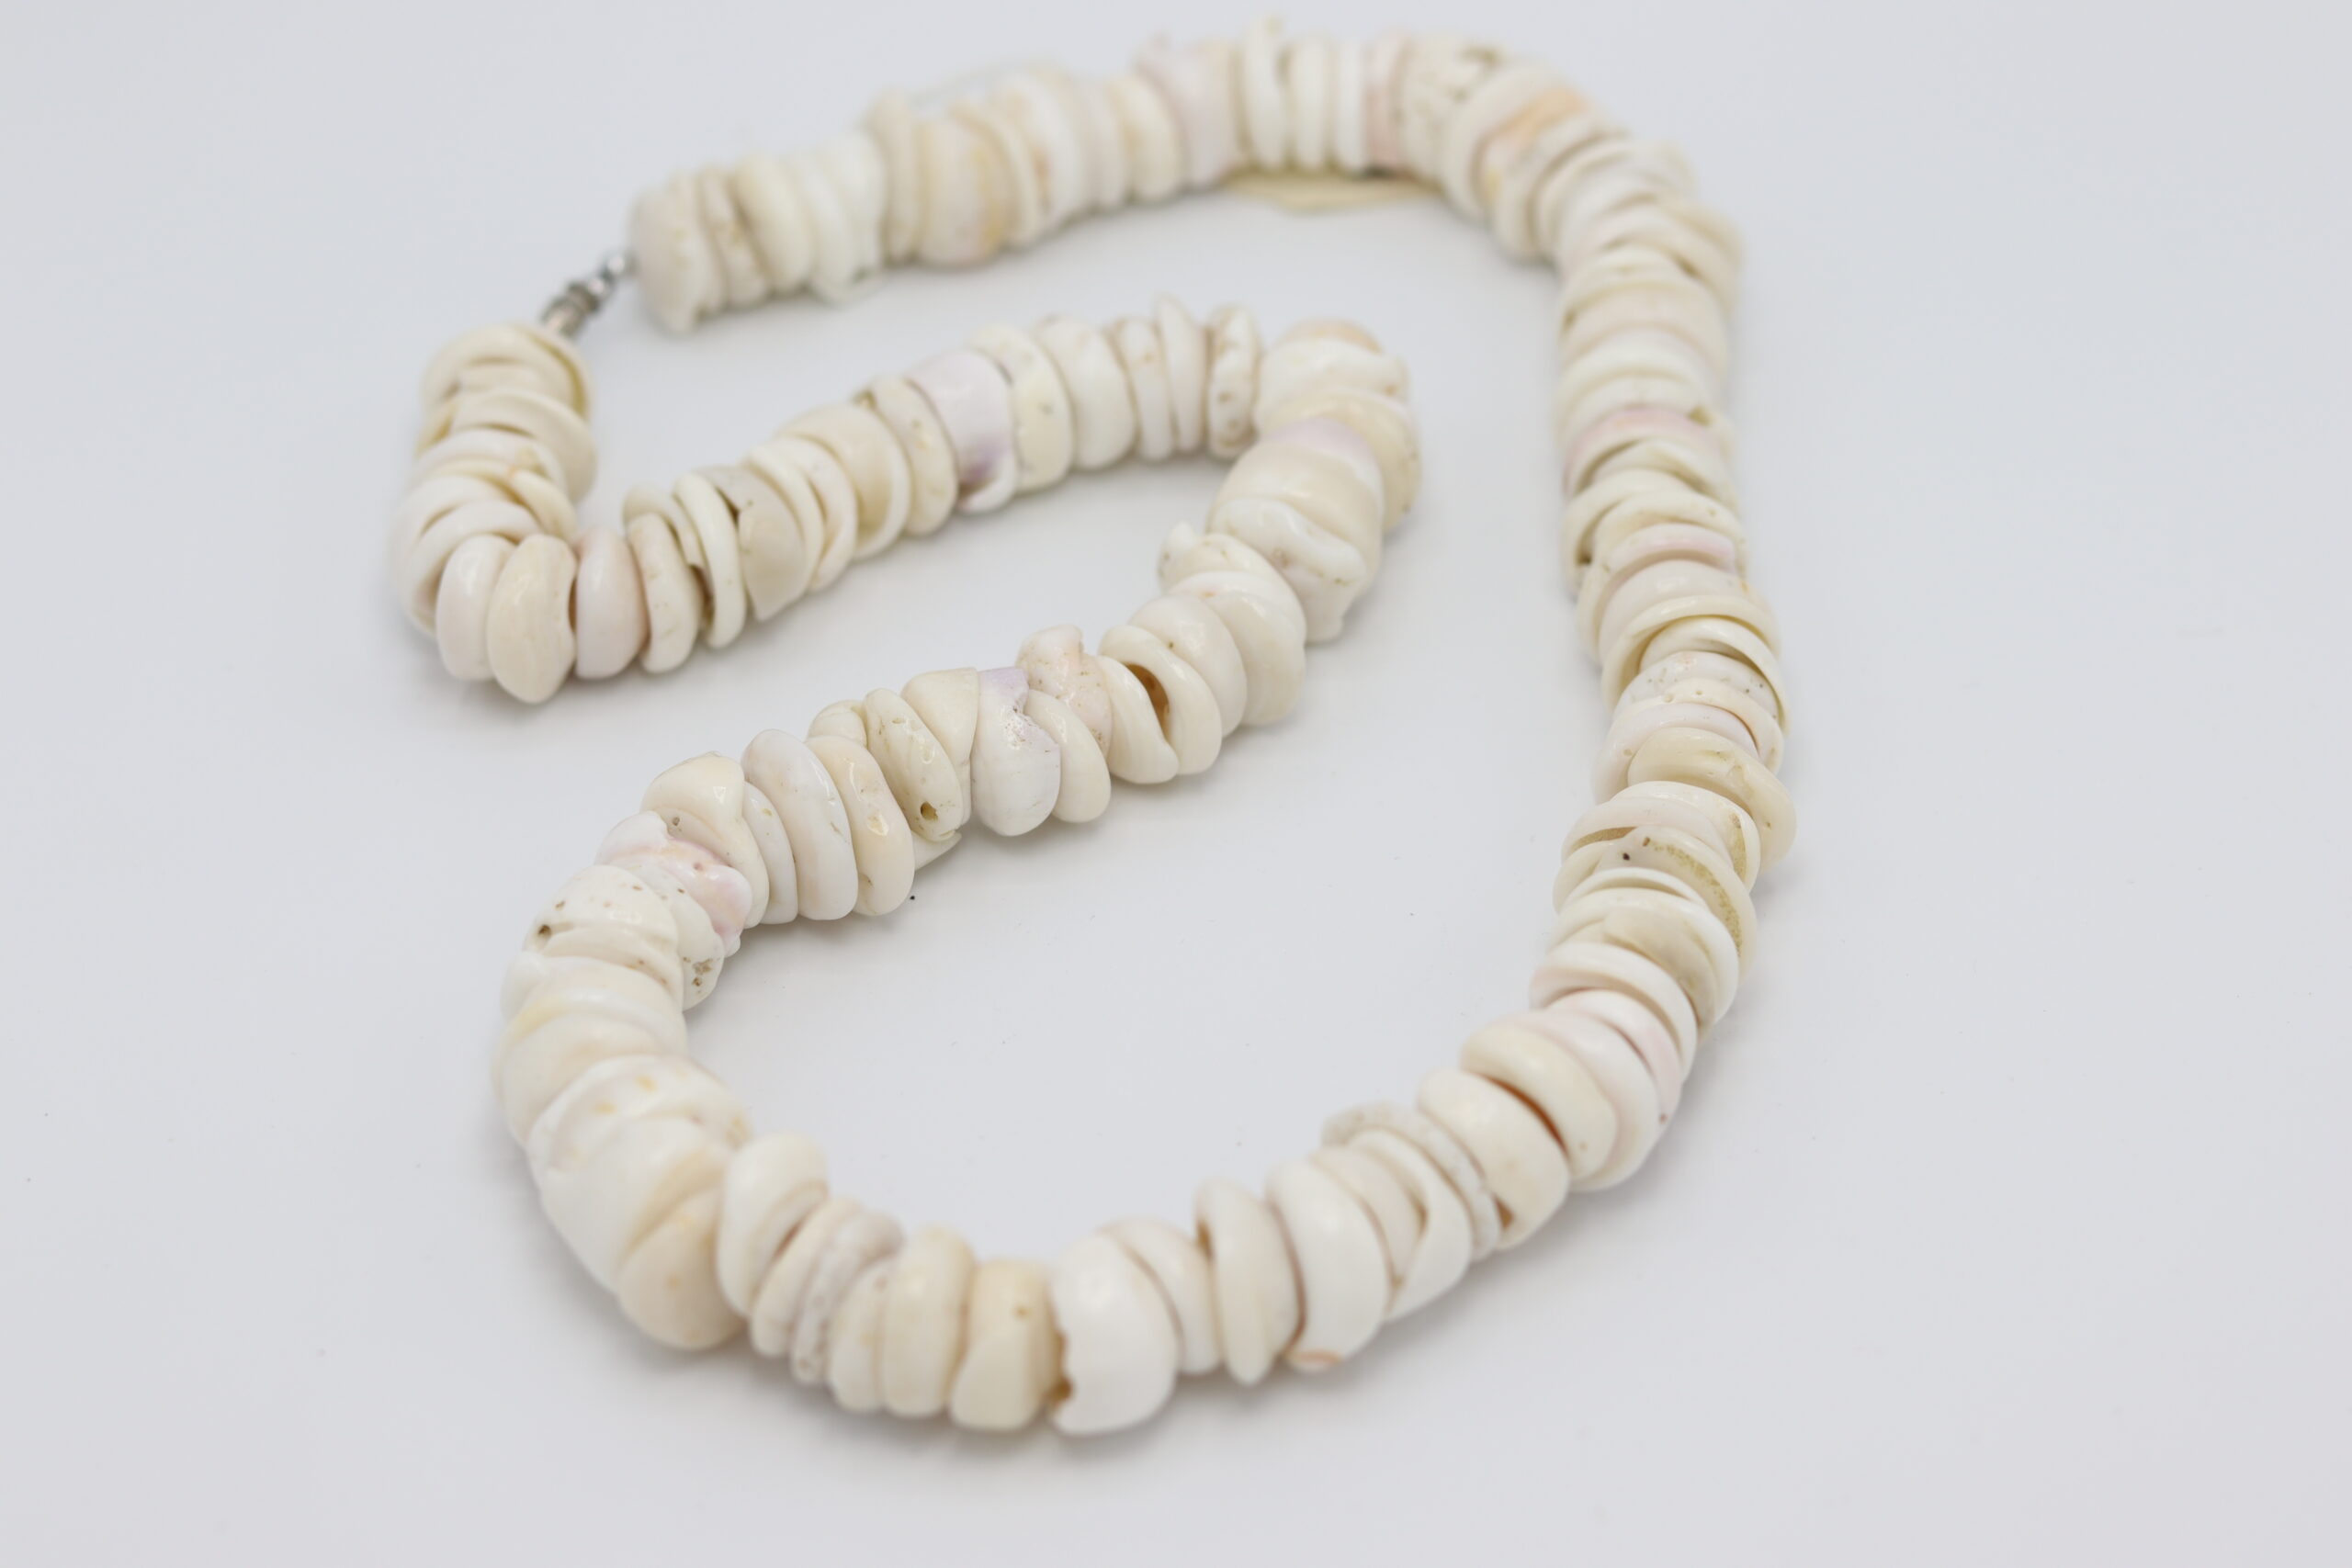 Moloka'i Puka Shell Necklace - #803